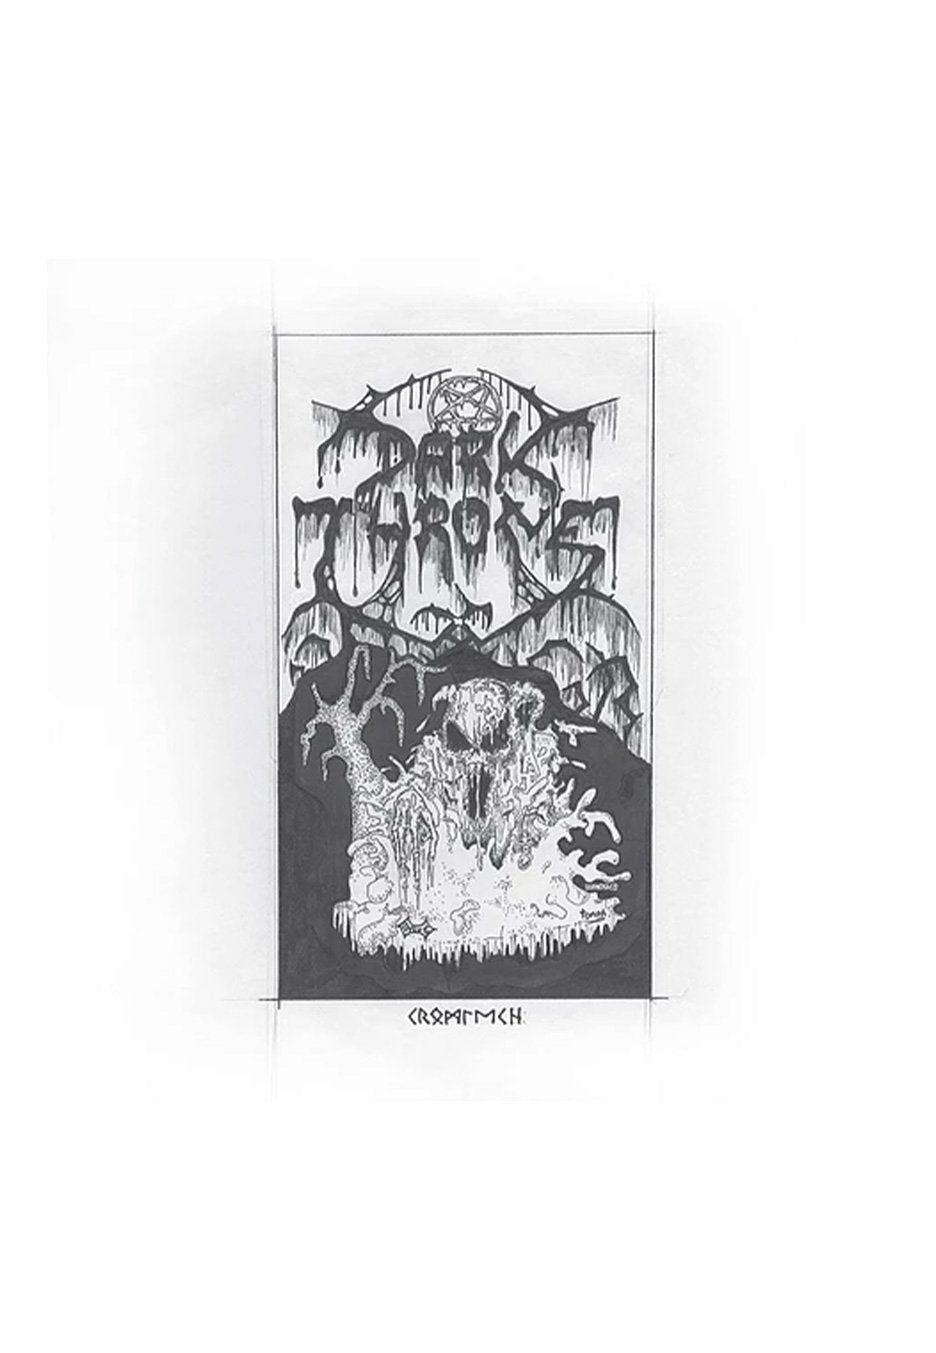 Darkthrone - Cromlech - Vinyl